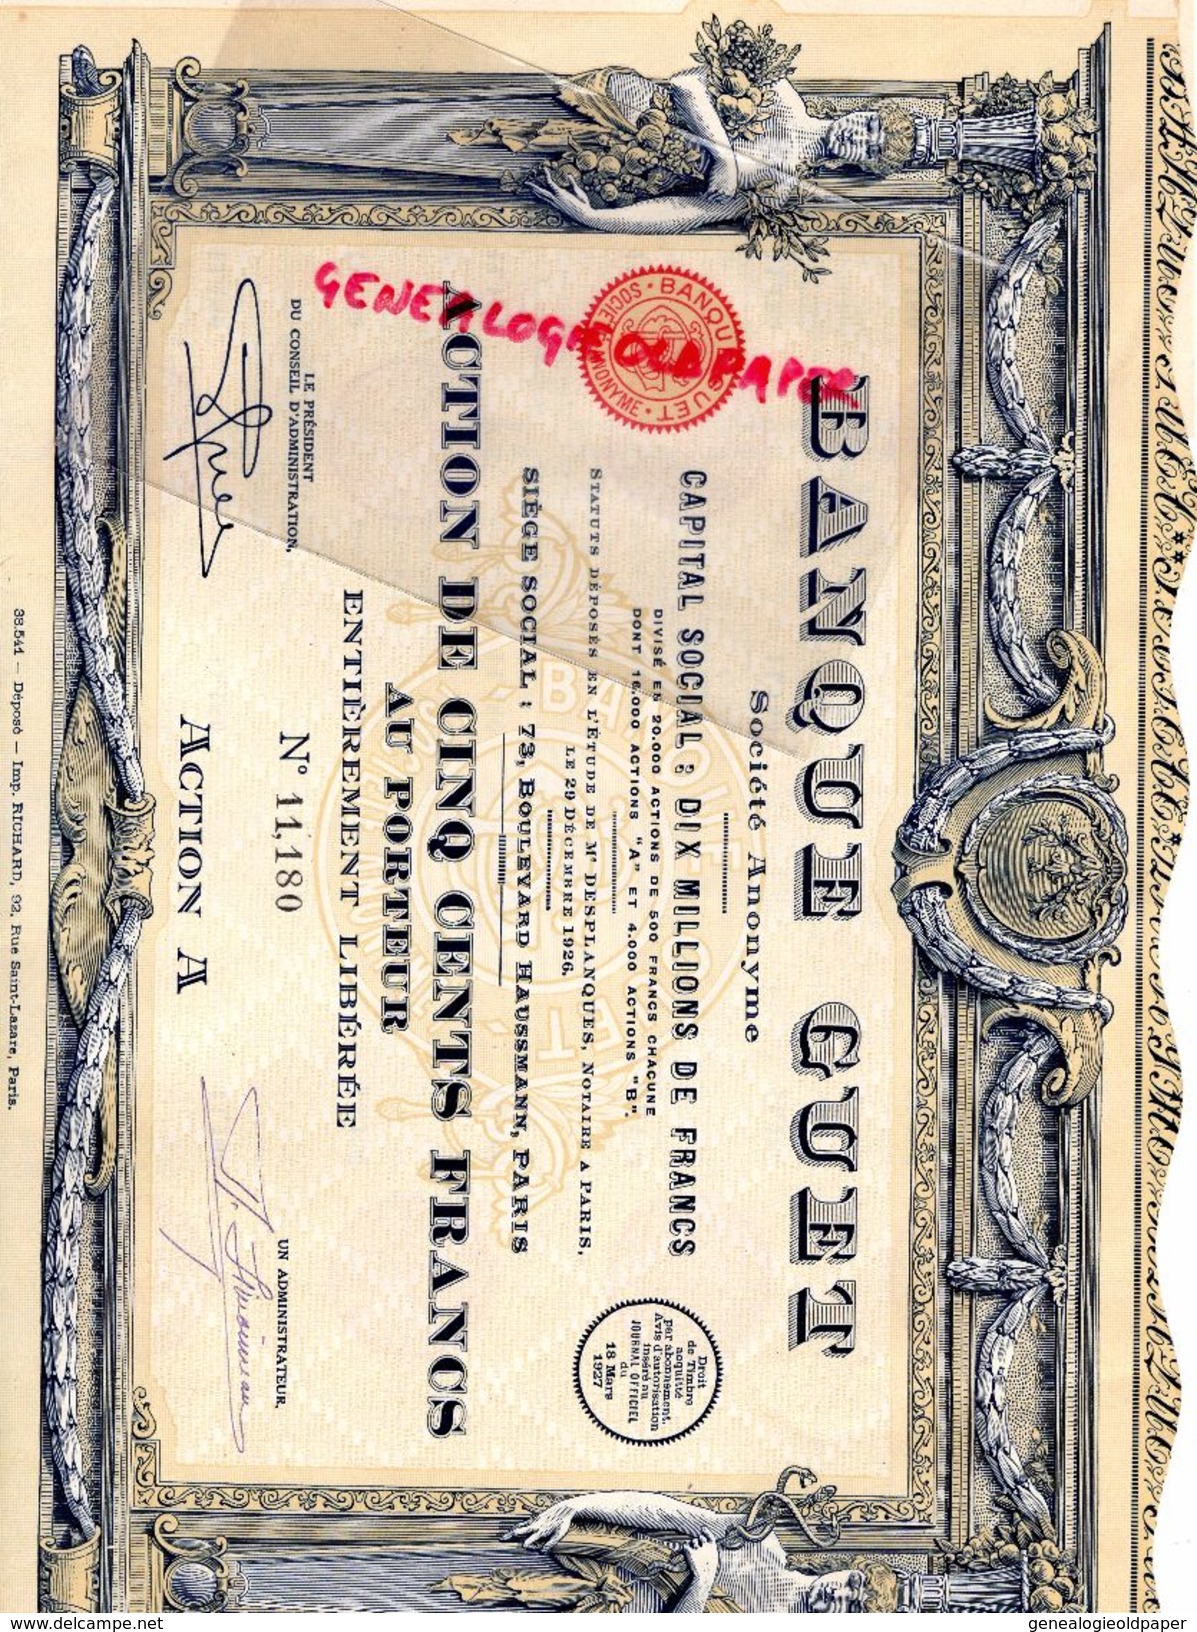 75 - PARIS- BANQUE GUET -ACTION 500 FRANCS- 1926- 73 BD HAUSSMANN- MAITRE DESPLANQUES NOTAIRE -IMPRIMERIE RICHARD - Banco & Caja De Ahorros